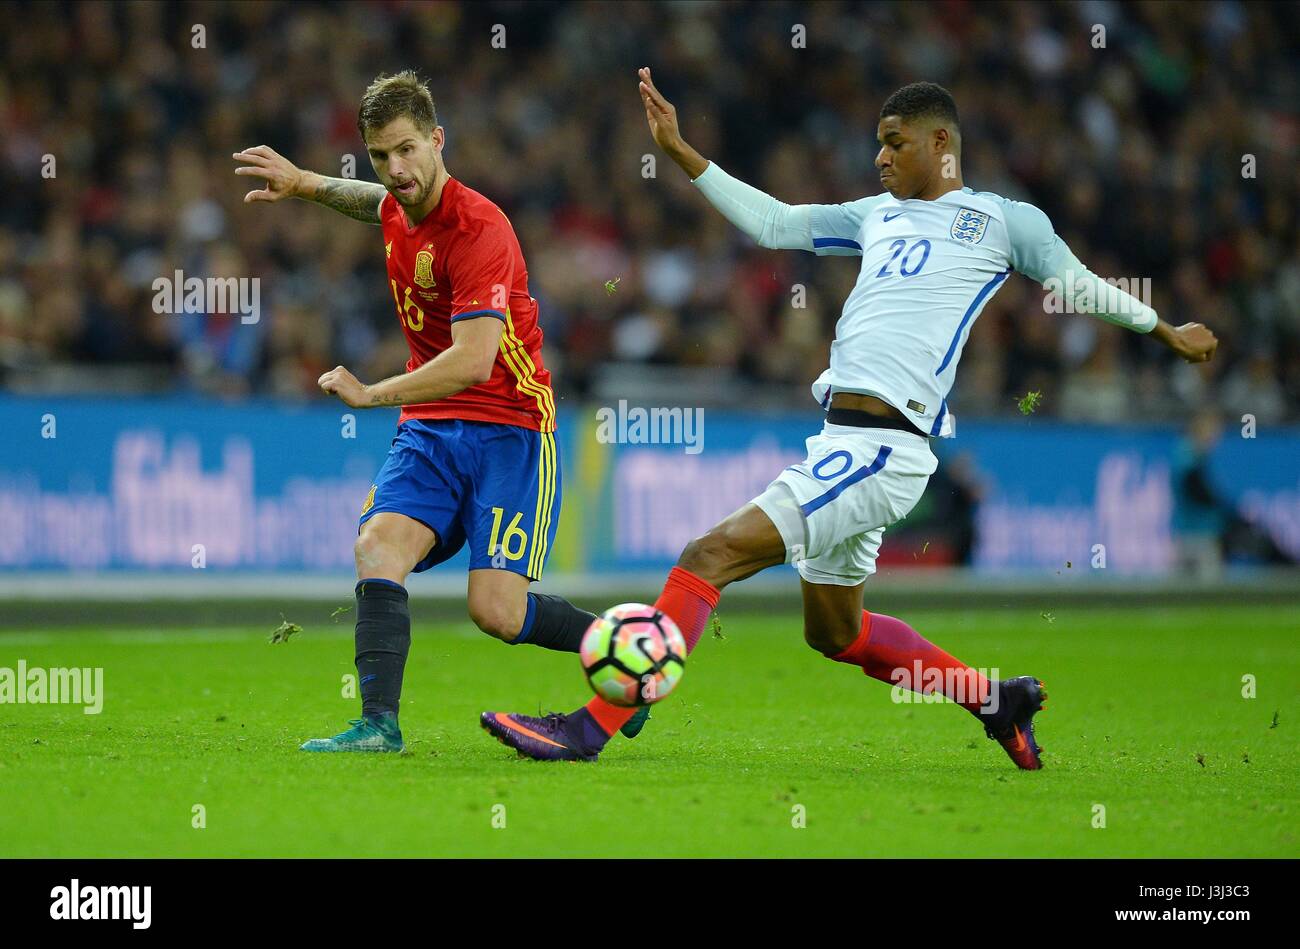 INIGO MARTINEZ, DE L'ESPAGNE EST CHA l'Angleterre v l'Espagne au stade de Wembley Londres Angleterre 15 Novembre 2016 Banque D'Images